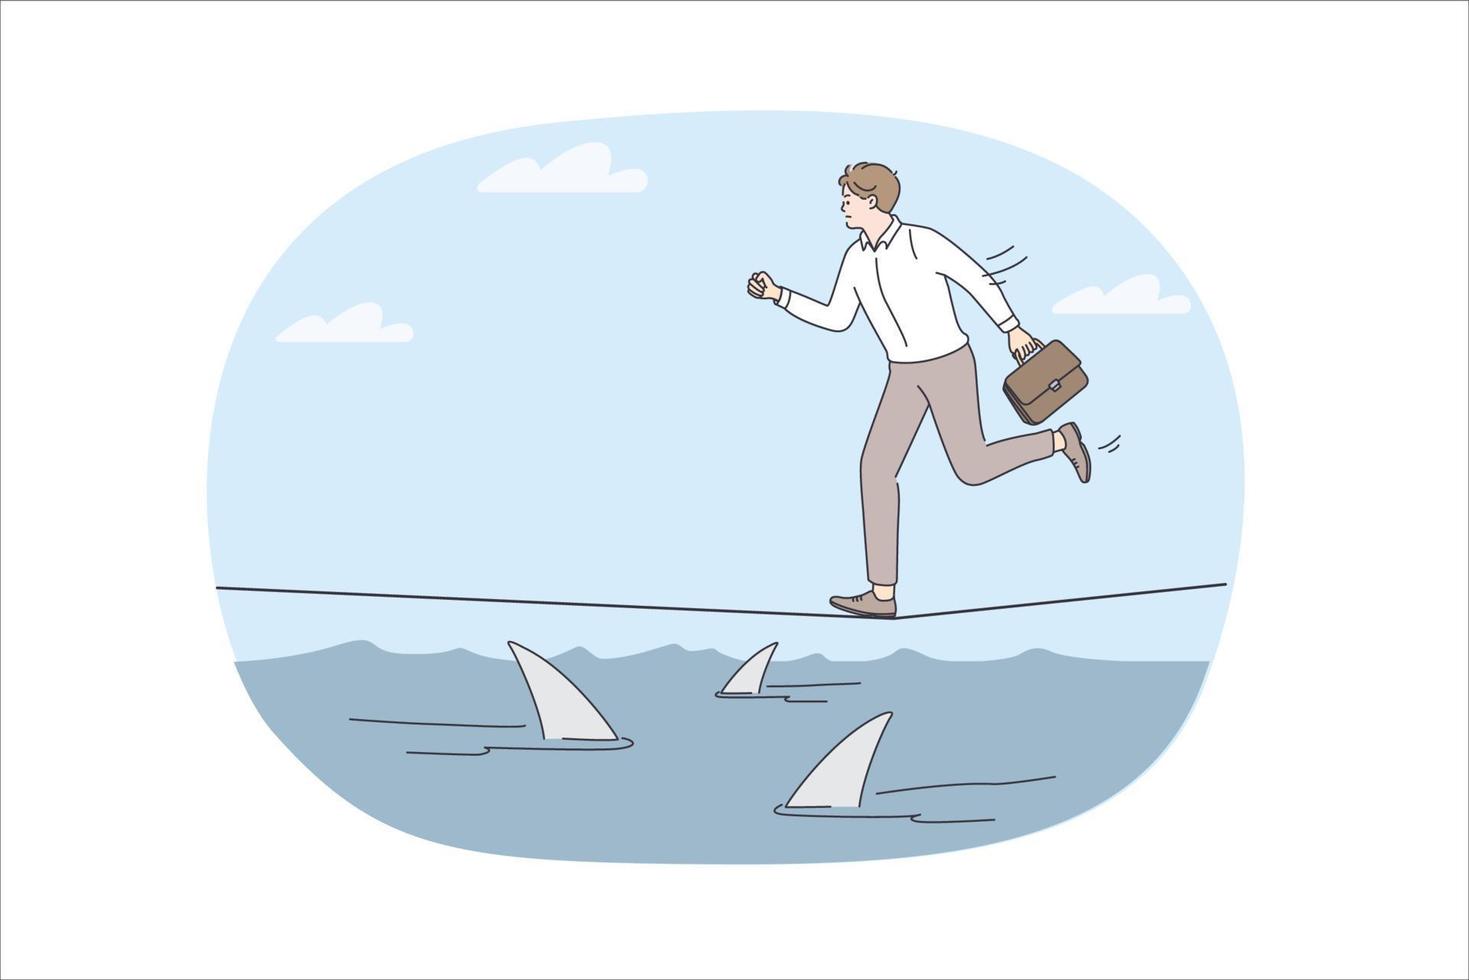 företag risker och utmaning begrepp. ung betonade affärsman löpning på rep över hav full av fara hajar skyndar vektor illustration